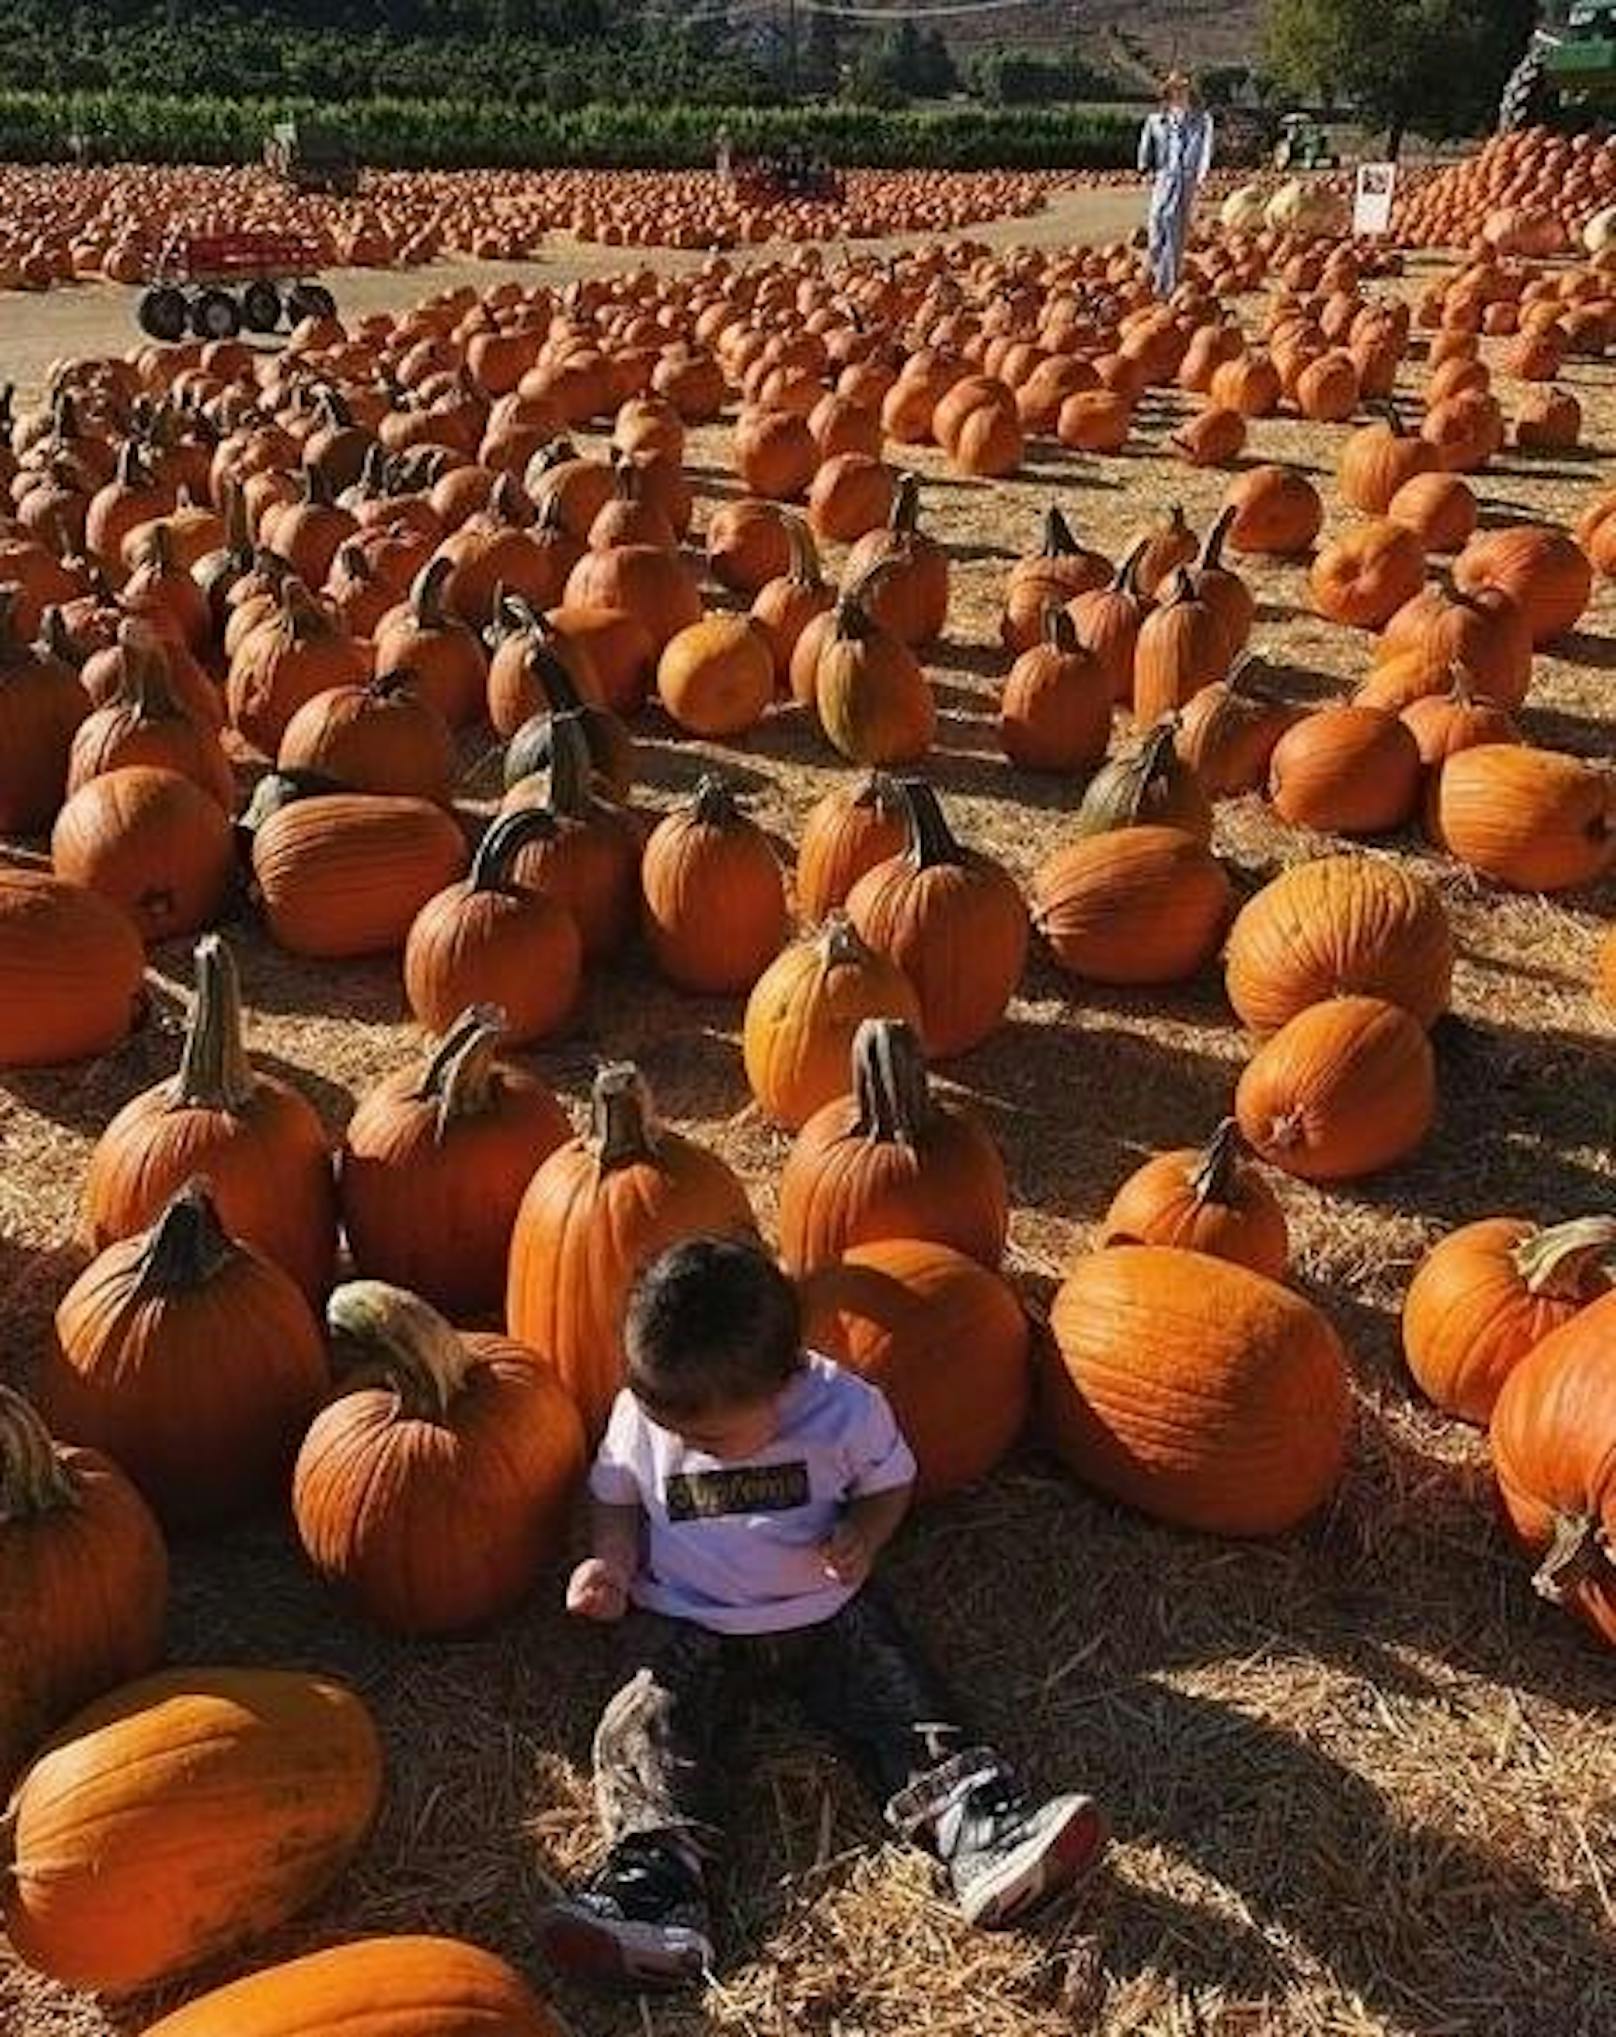 25.10.2018: Die kleine Stormi erlebt heuer ihr erstes Halloween. Mama Kylie Jenner hat sie schon mal zur Vorbereitung in ein Feld voller Kürbisse gesetzt.